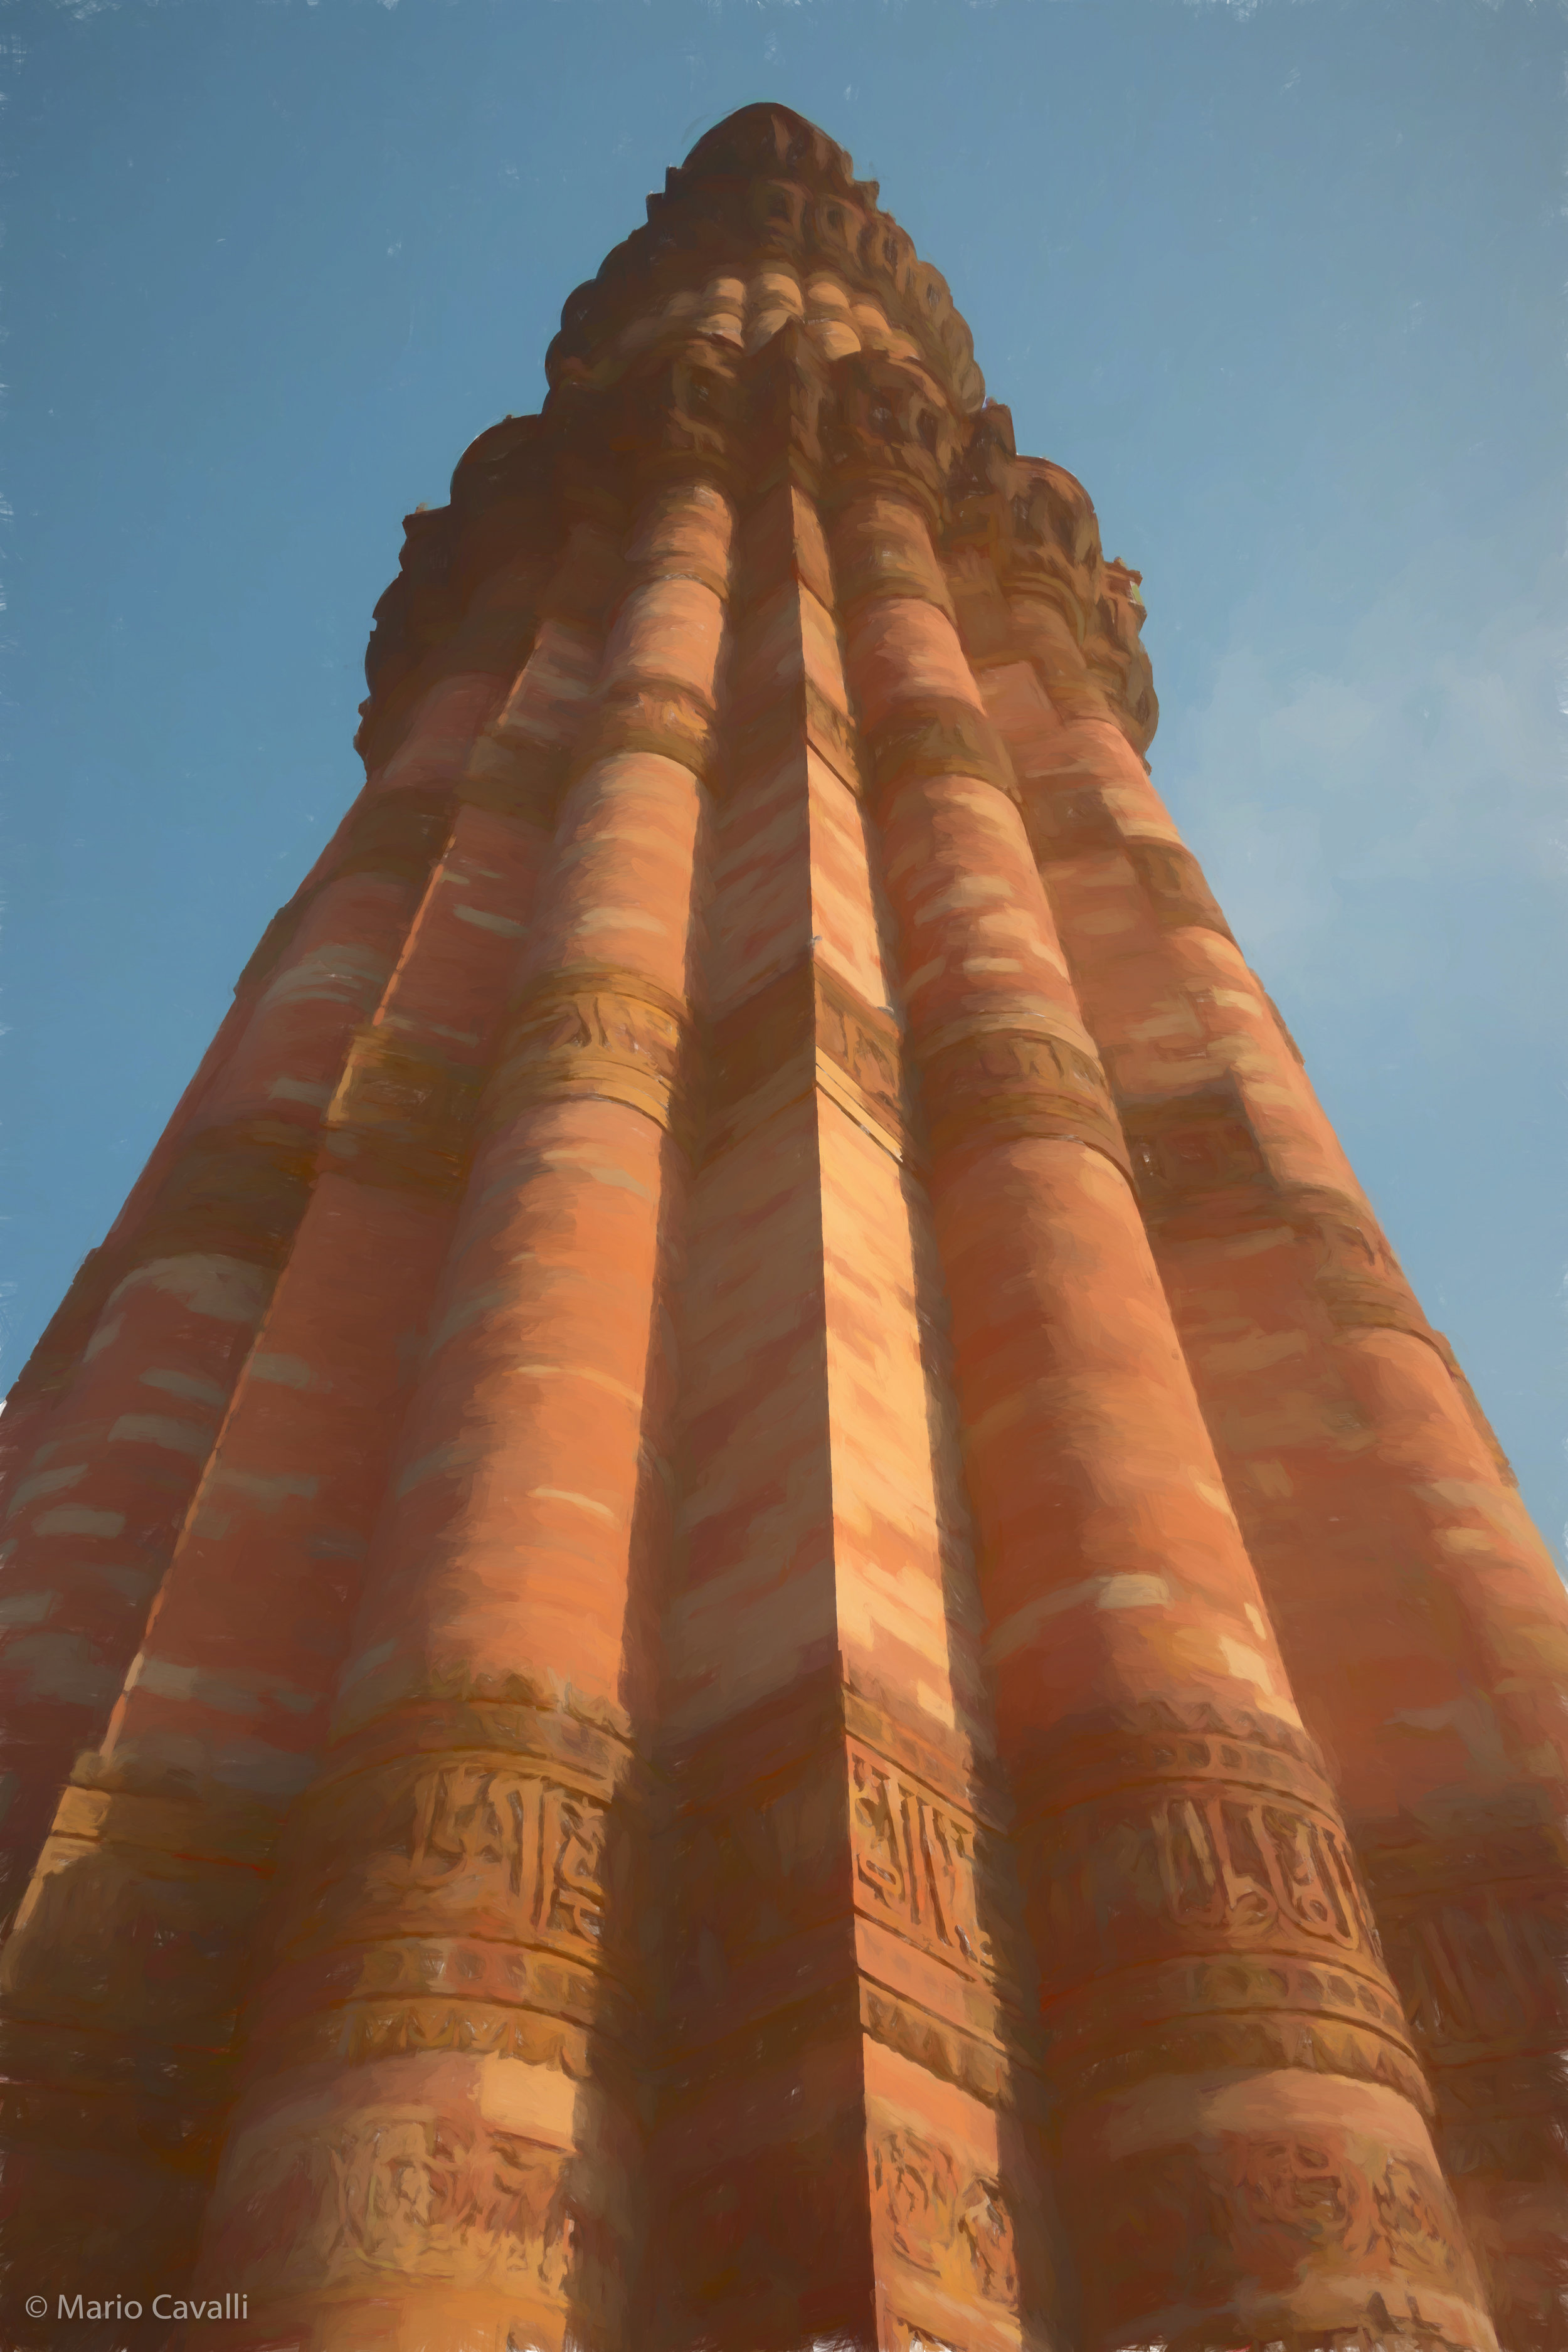 Qutb Minar, New Delhi